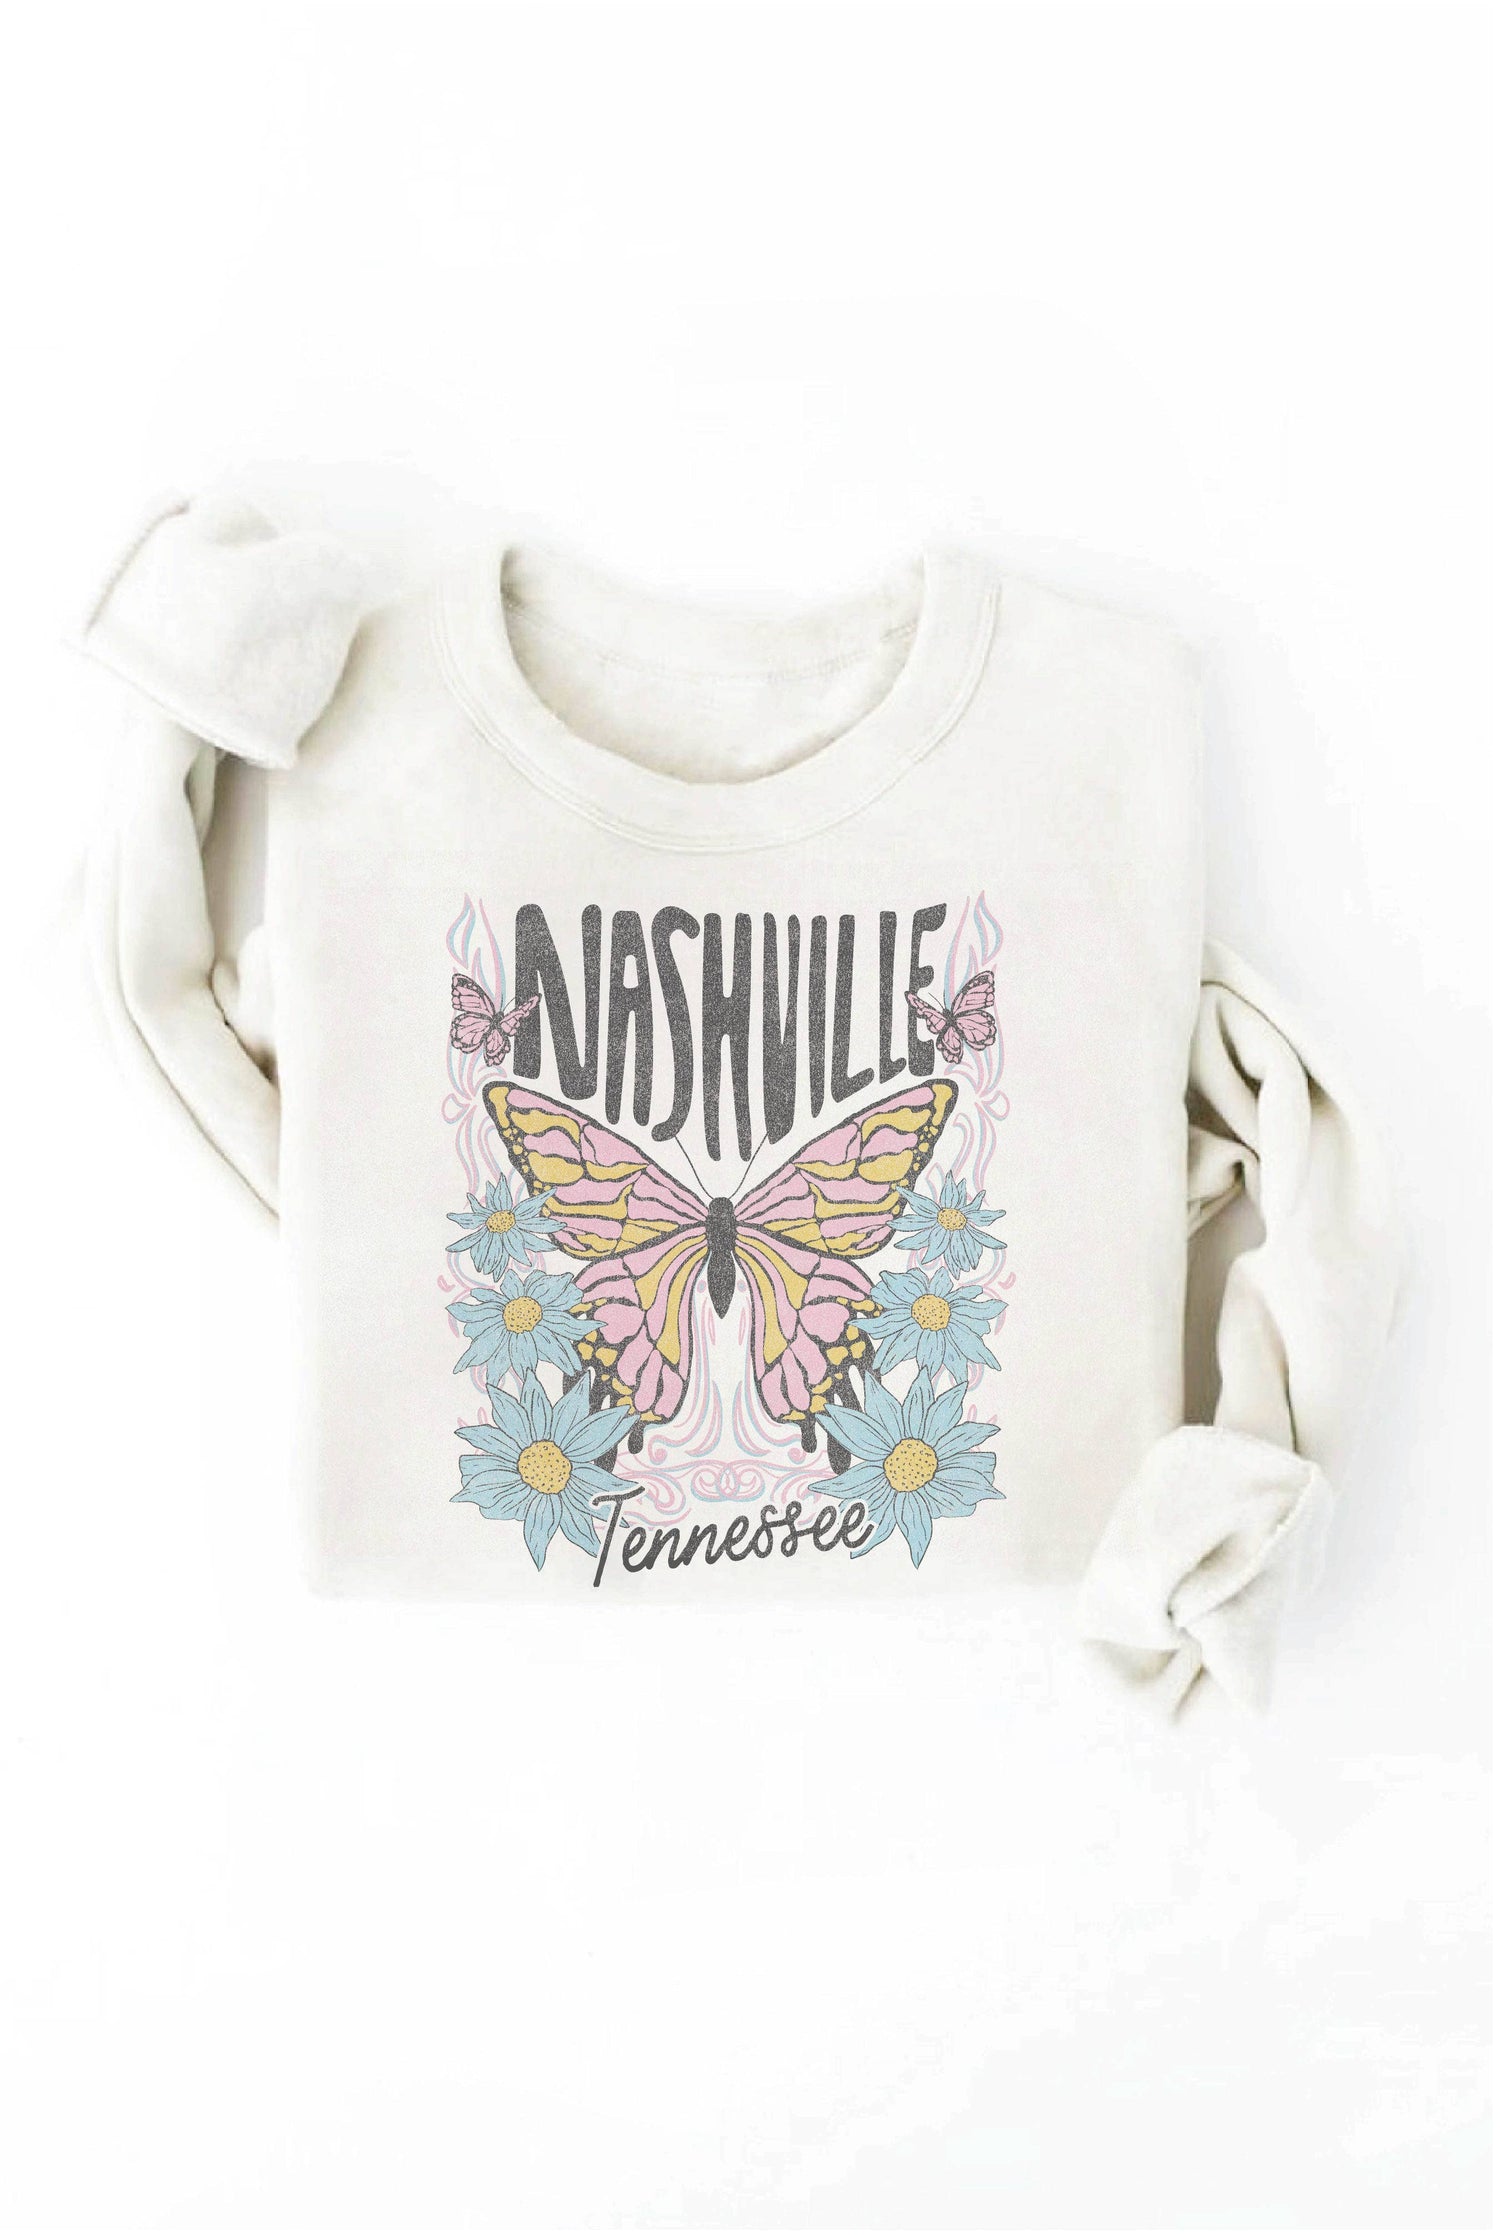 Nashville Tennessee Graphic Sweatshirt